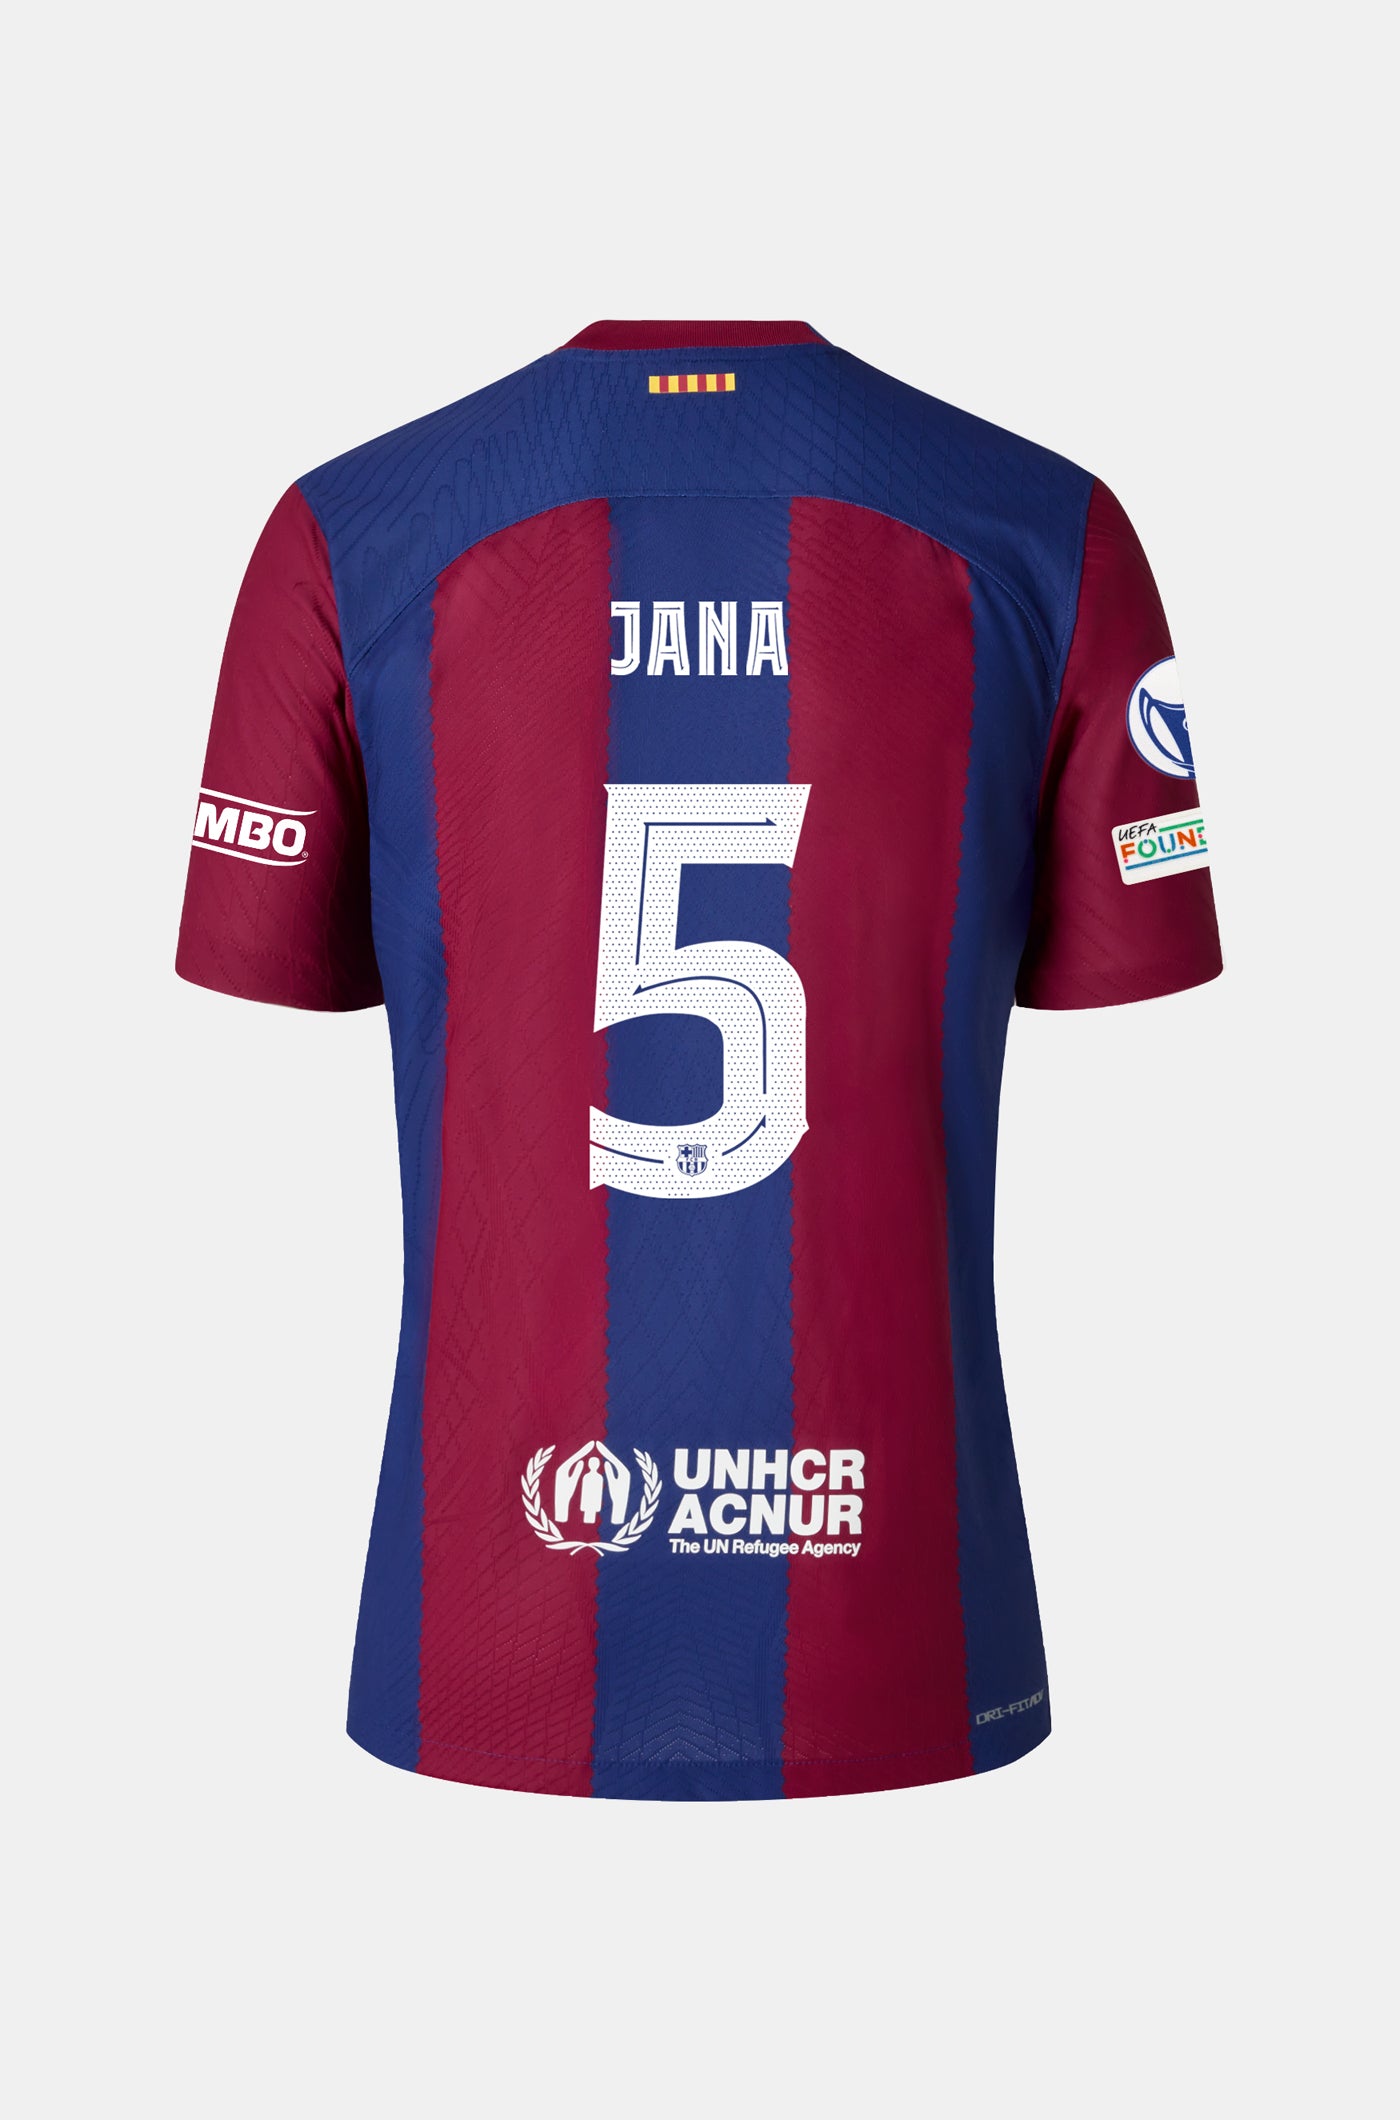 UWCL Heimtrikot FC Barcelona 23/24 - Männer - JANA